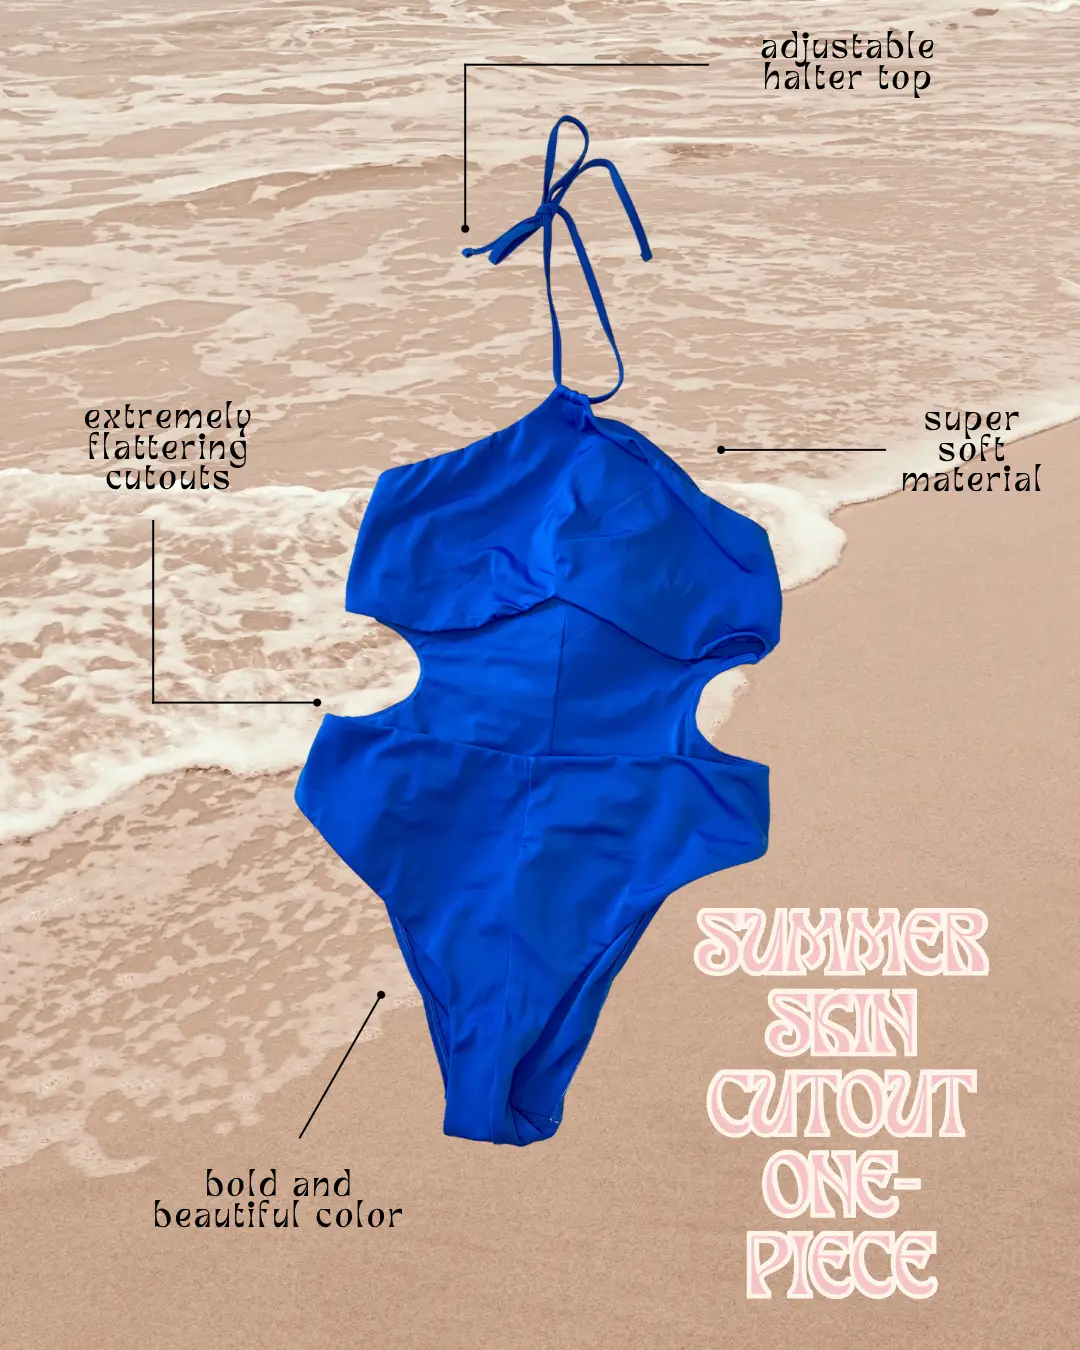 Summer Skin Cutout One-Piece, EcoSplash Swim